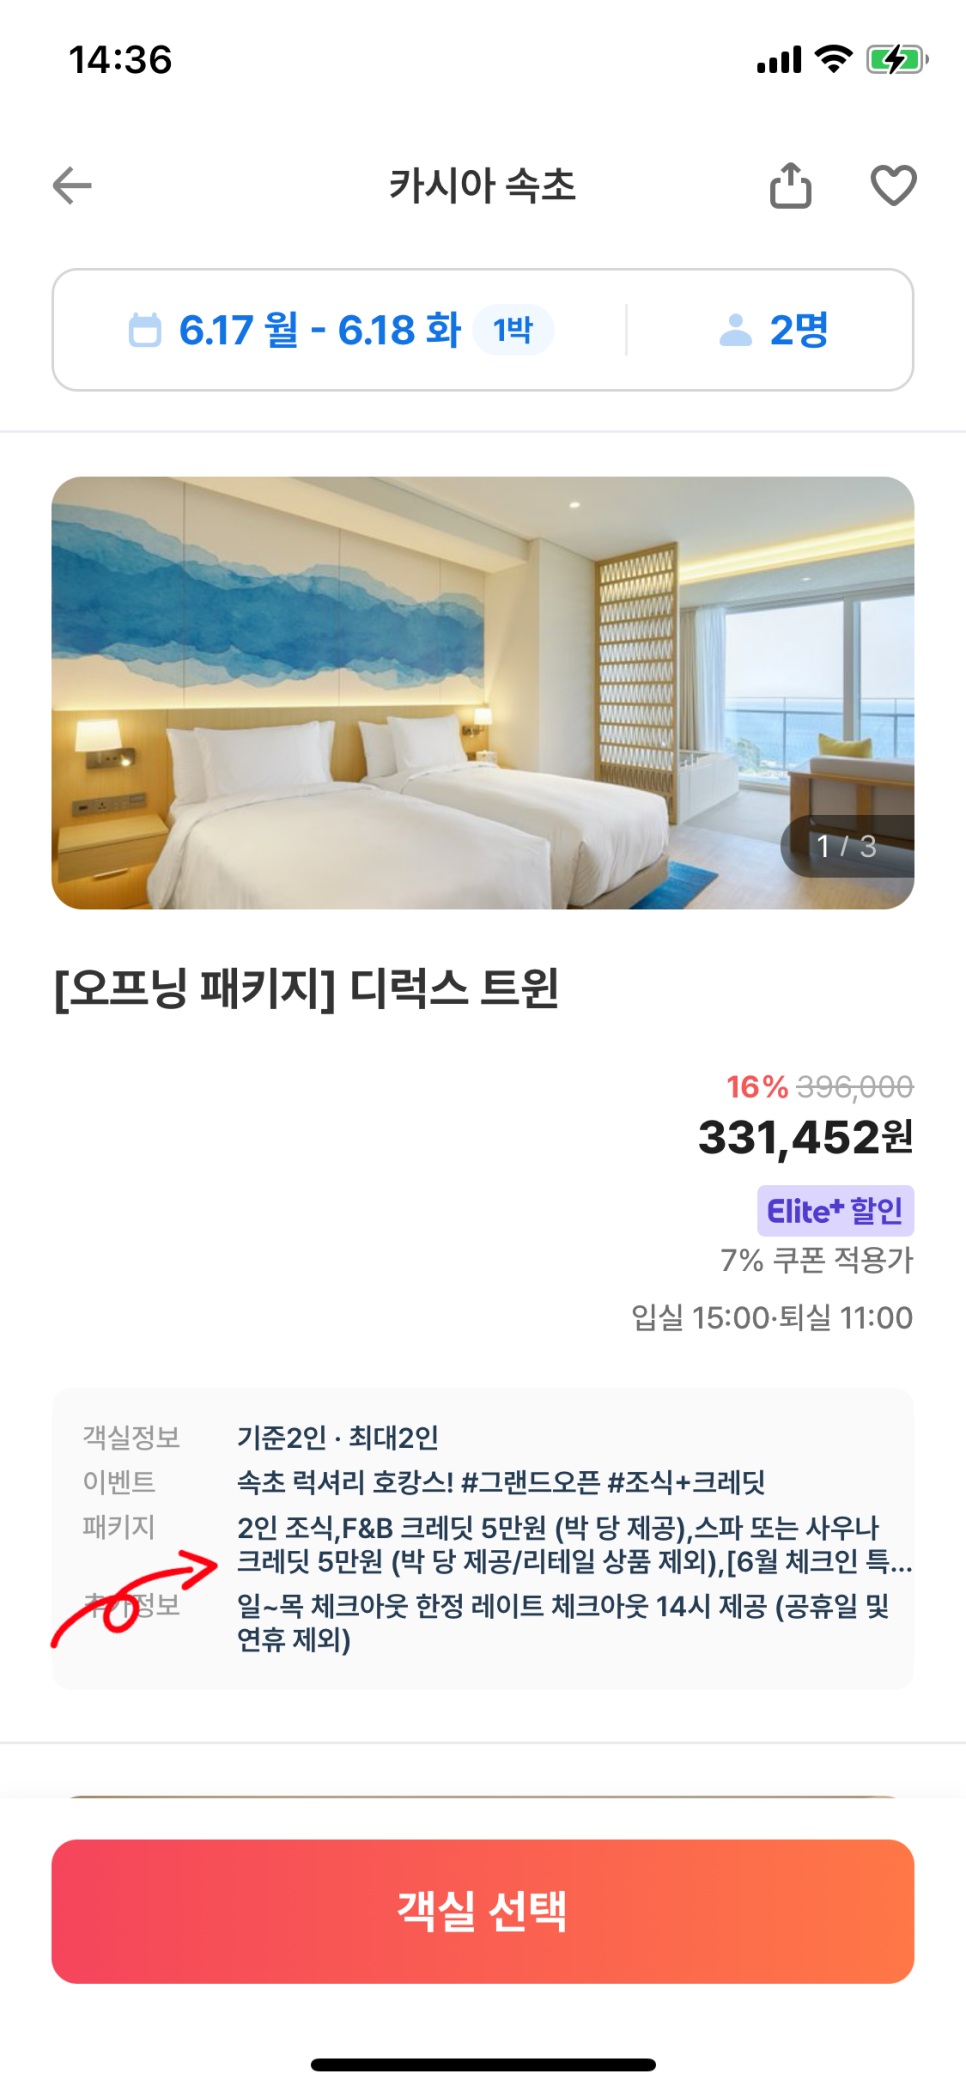 카시아 속초 호텔 추천 신상 핫플 숙소 1박2일 오션뷰 수영장